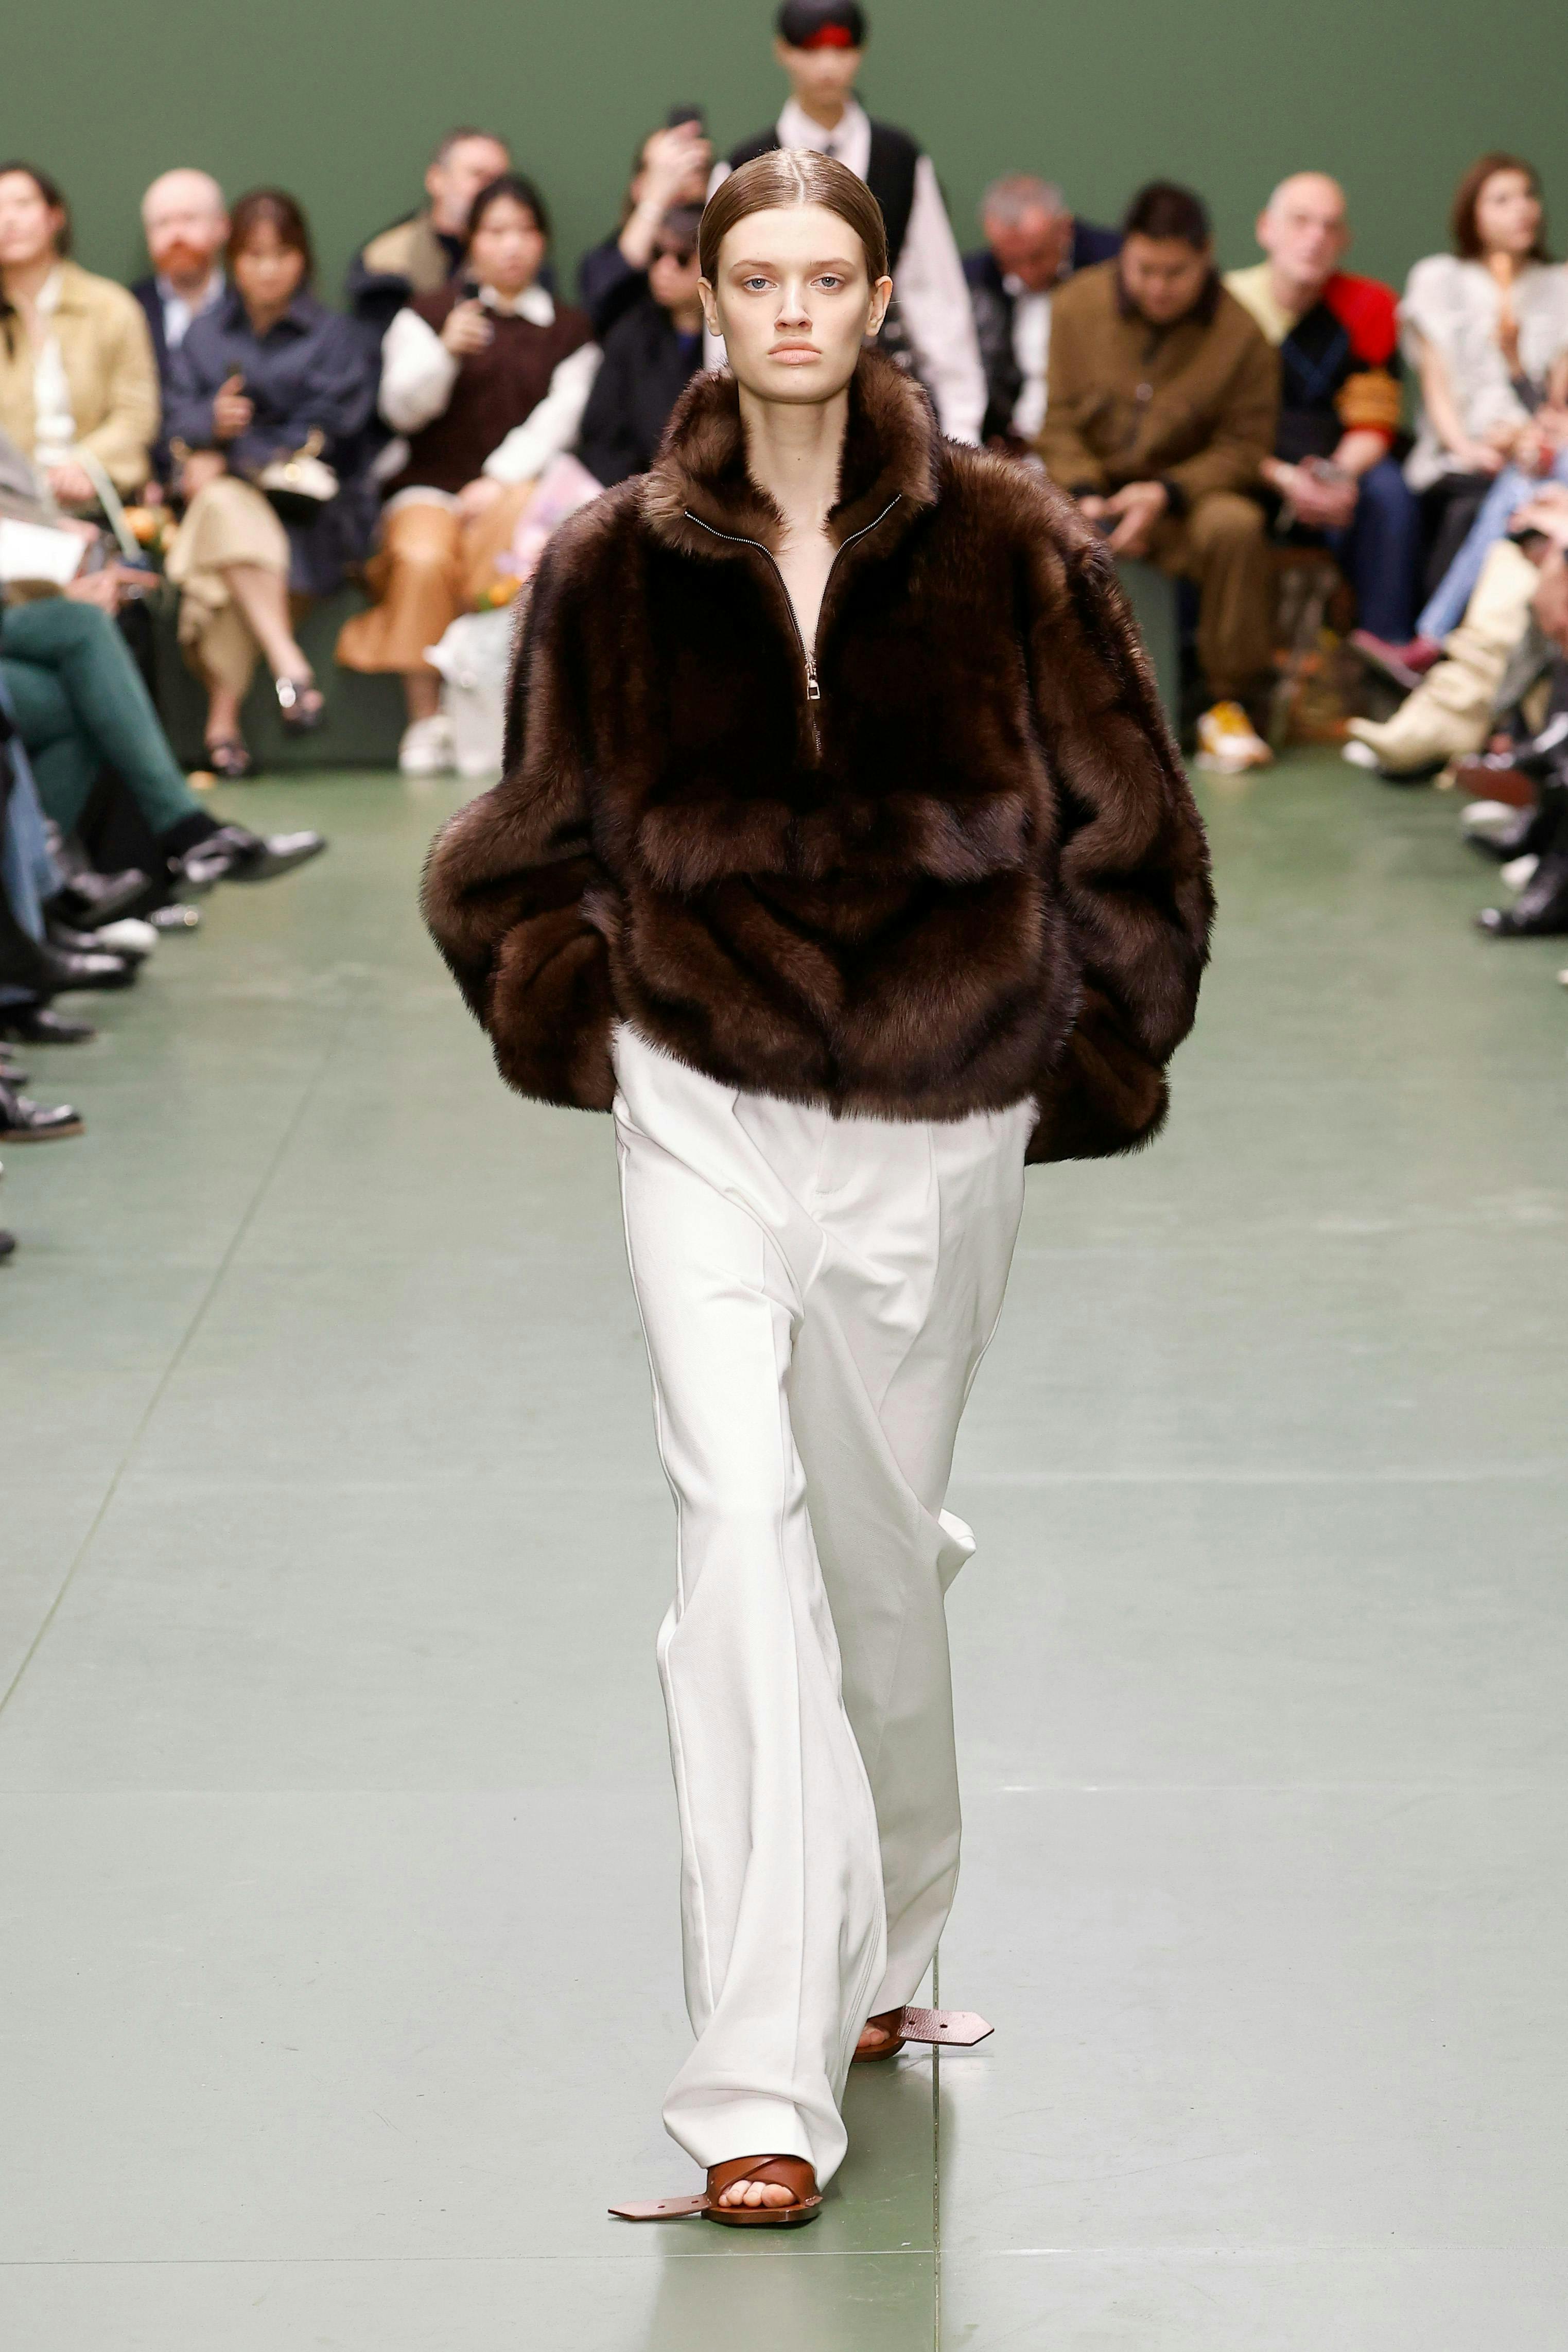 paris fashion coat adult female person woman shoe male man jacket